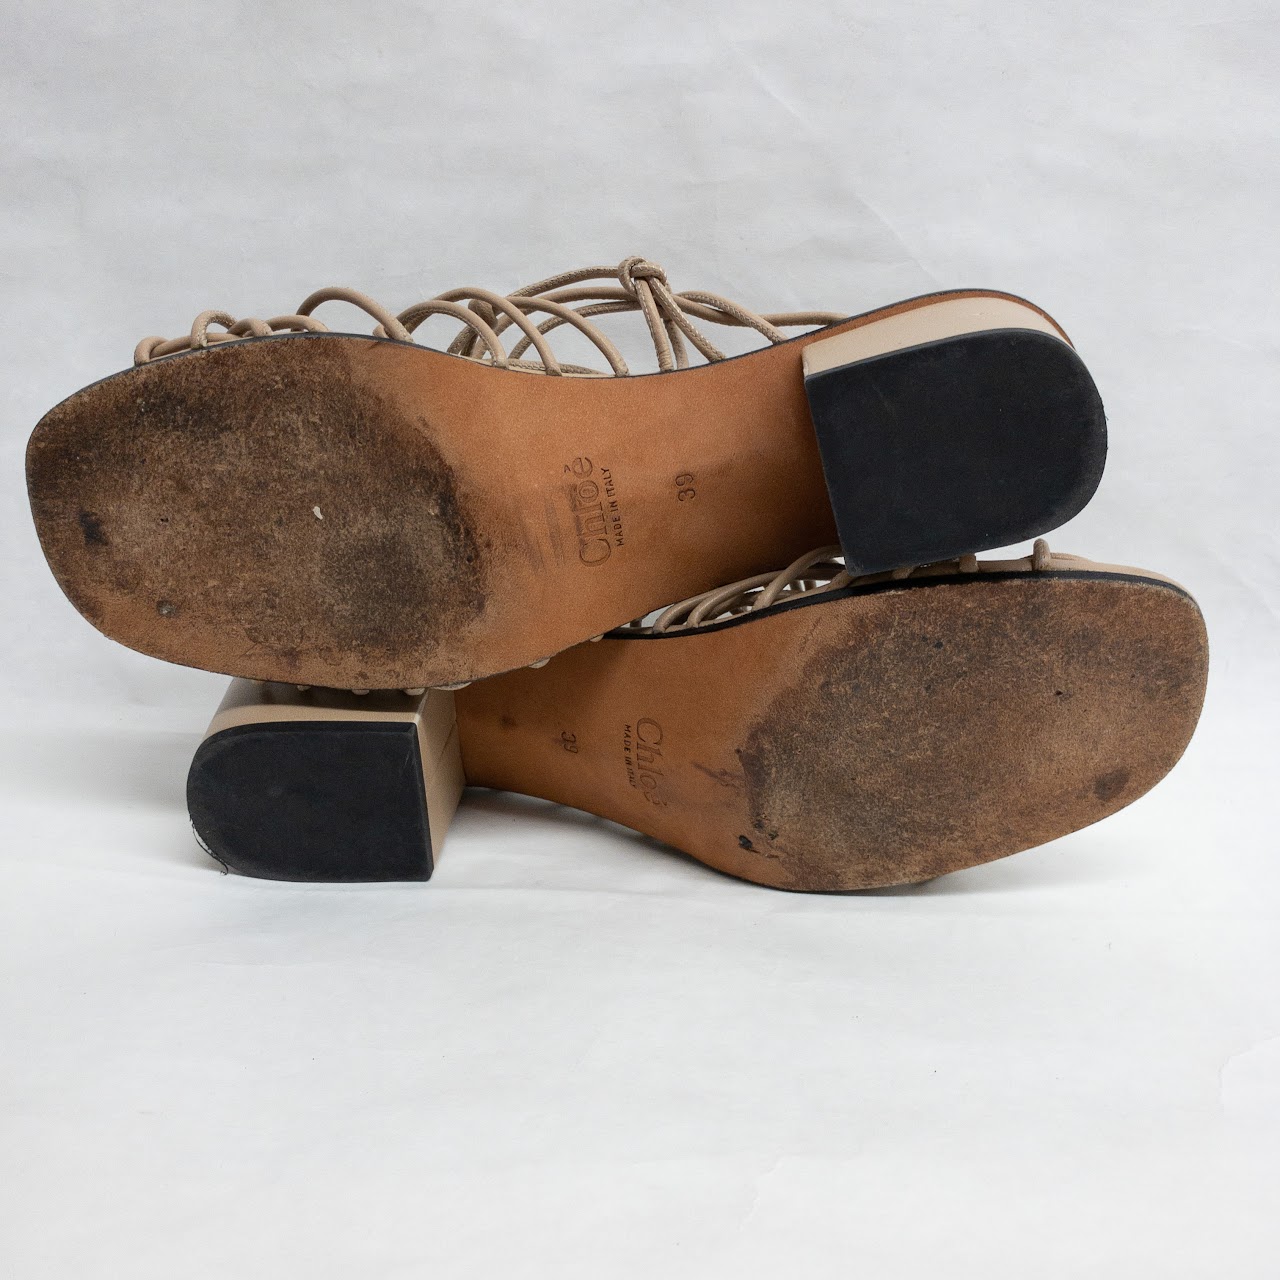 Chloé Woven Strap Sandals